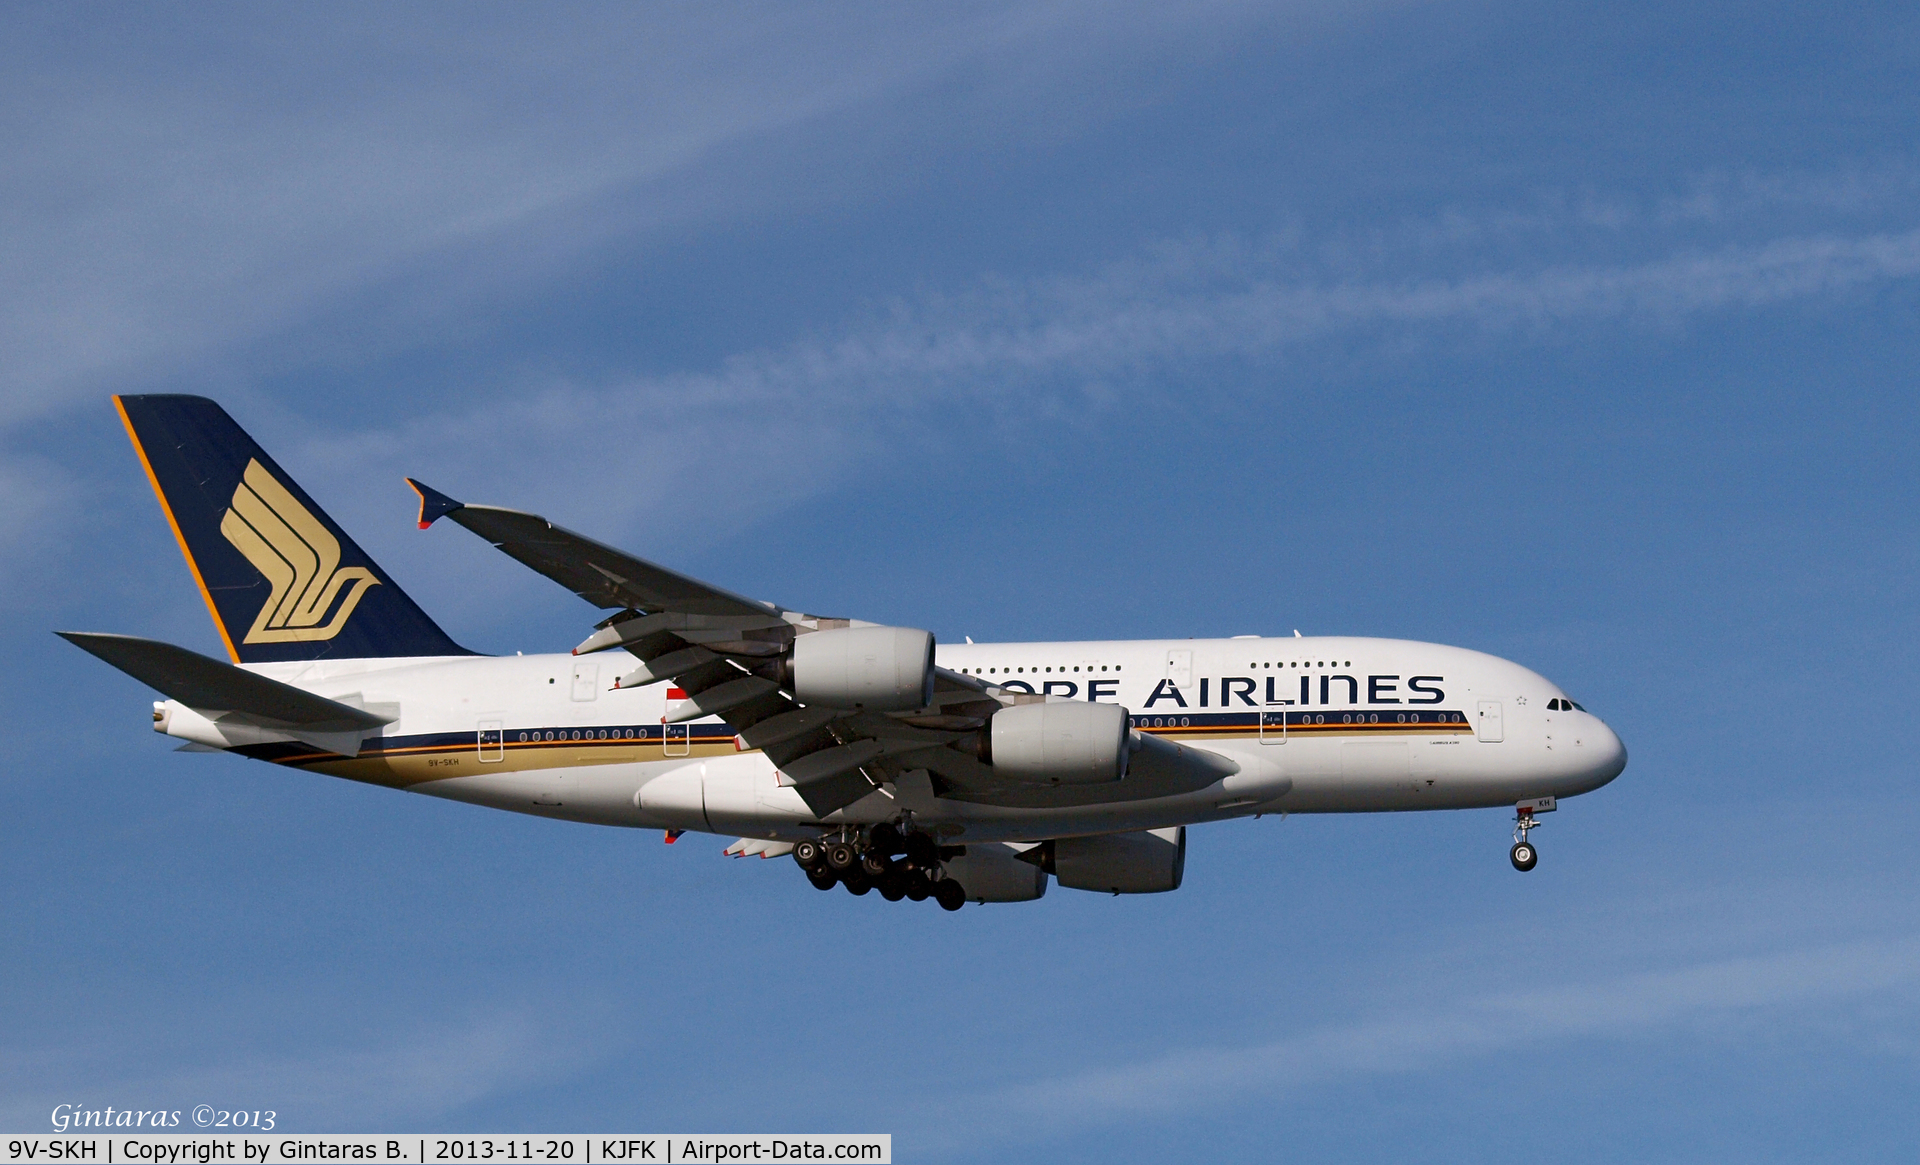 9V-SKH, 2008 Airbus A380-841 C/N 021, Going To A Landing on 4R, JFK